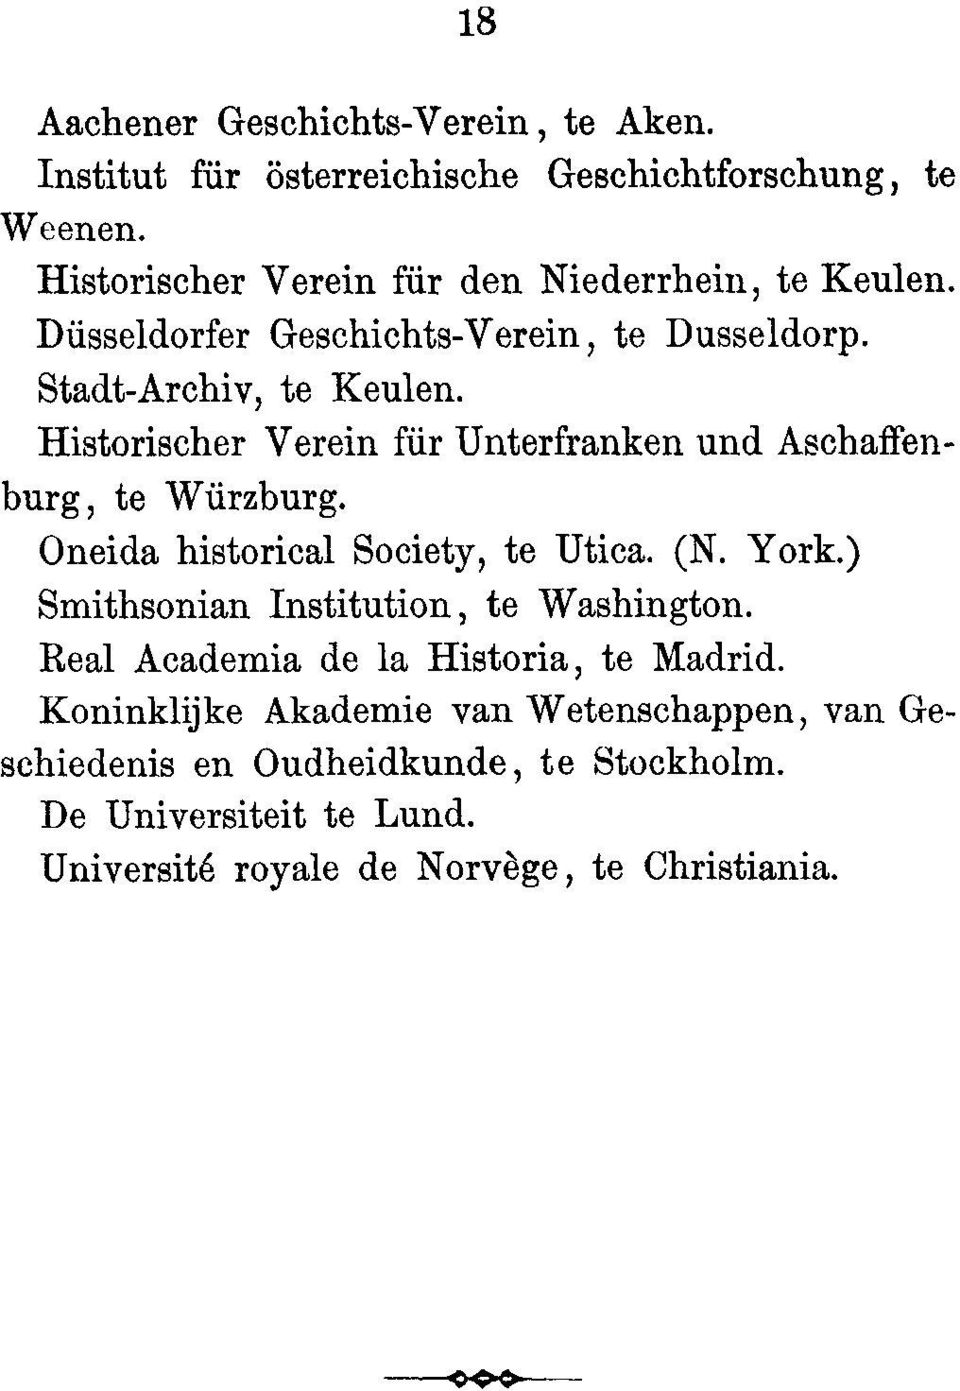 Historischer Verein fur Unterfranken and Aschaffenburg, to Wi rzburg. Oneida historical Society, to Utica. (N. York.